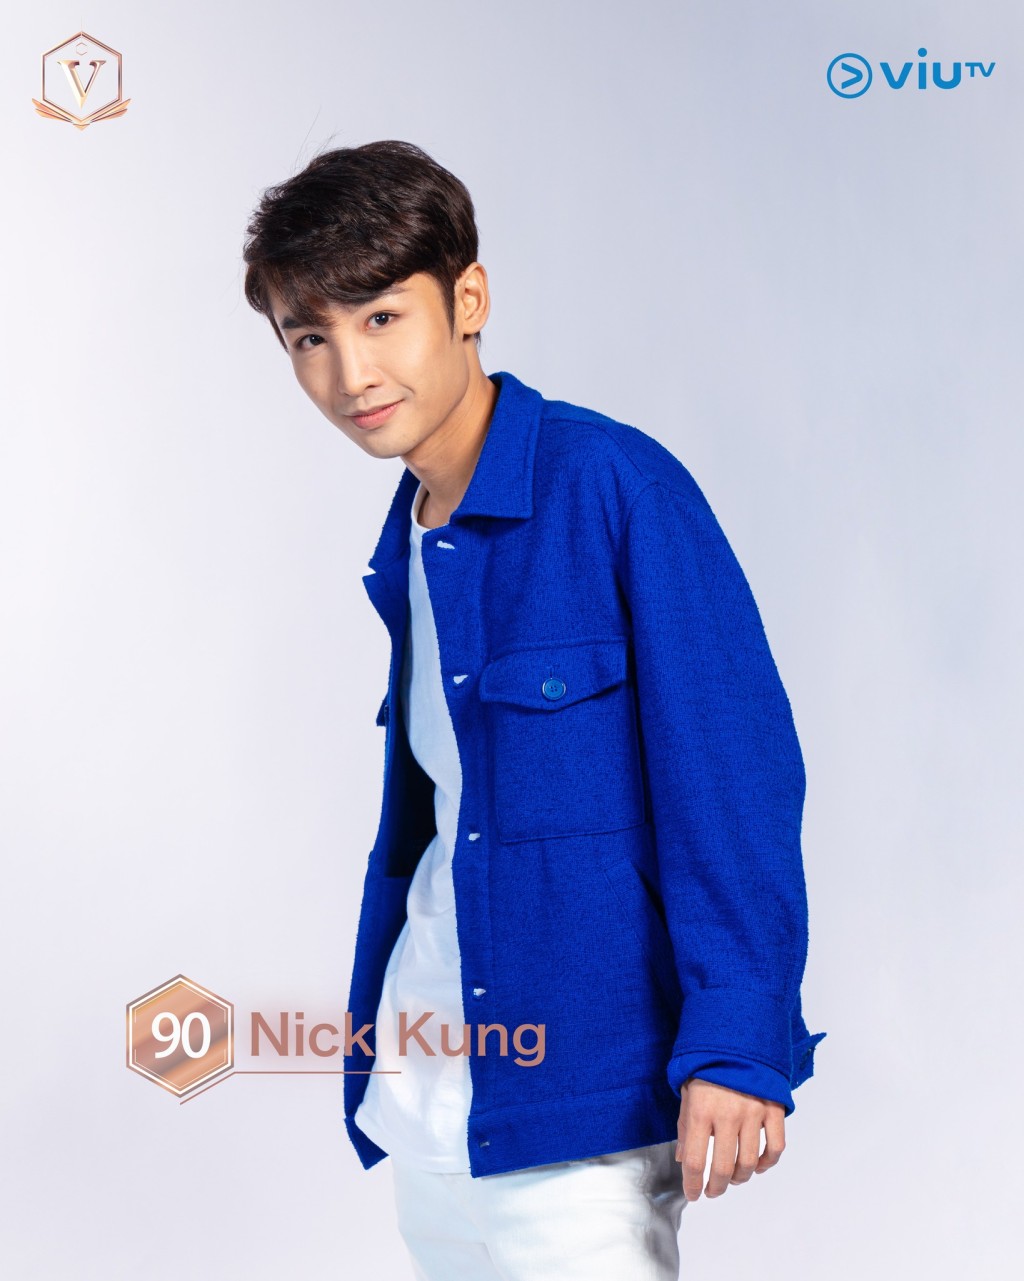 龔建華（Nickkung） 年齡： 28 職業： 歌手、演員 擅長： 唱歌、演戲 IG：nickkung916 #吉隆坡參賽者